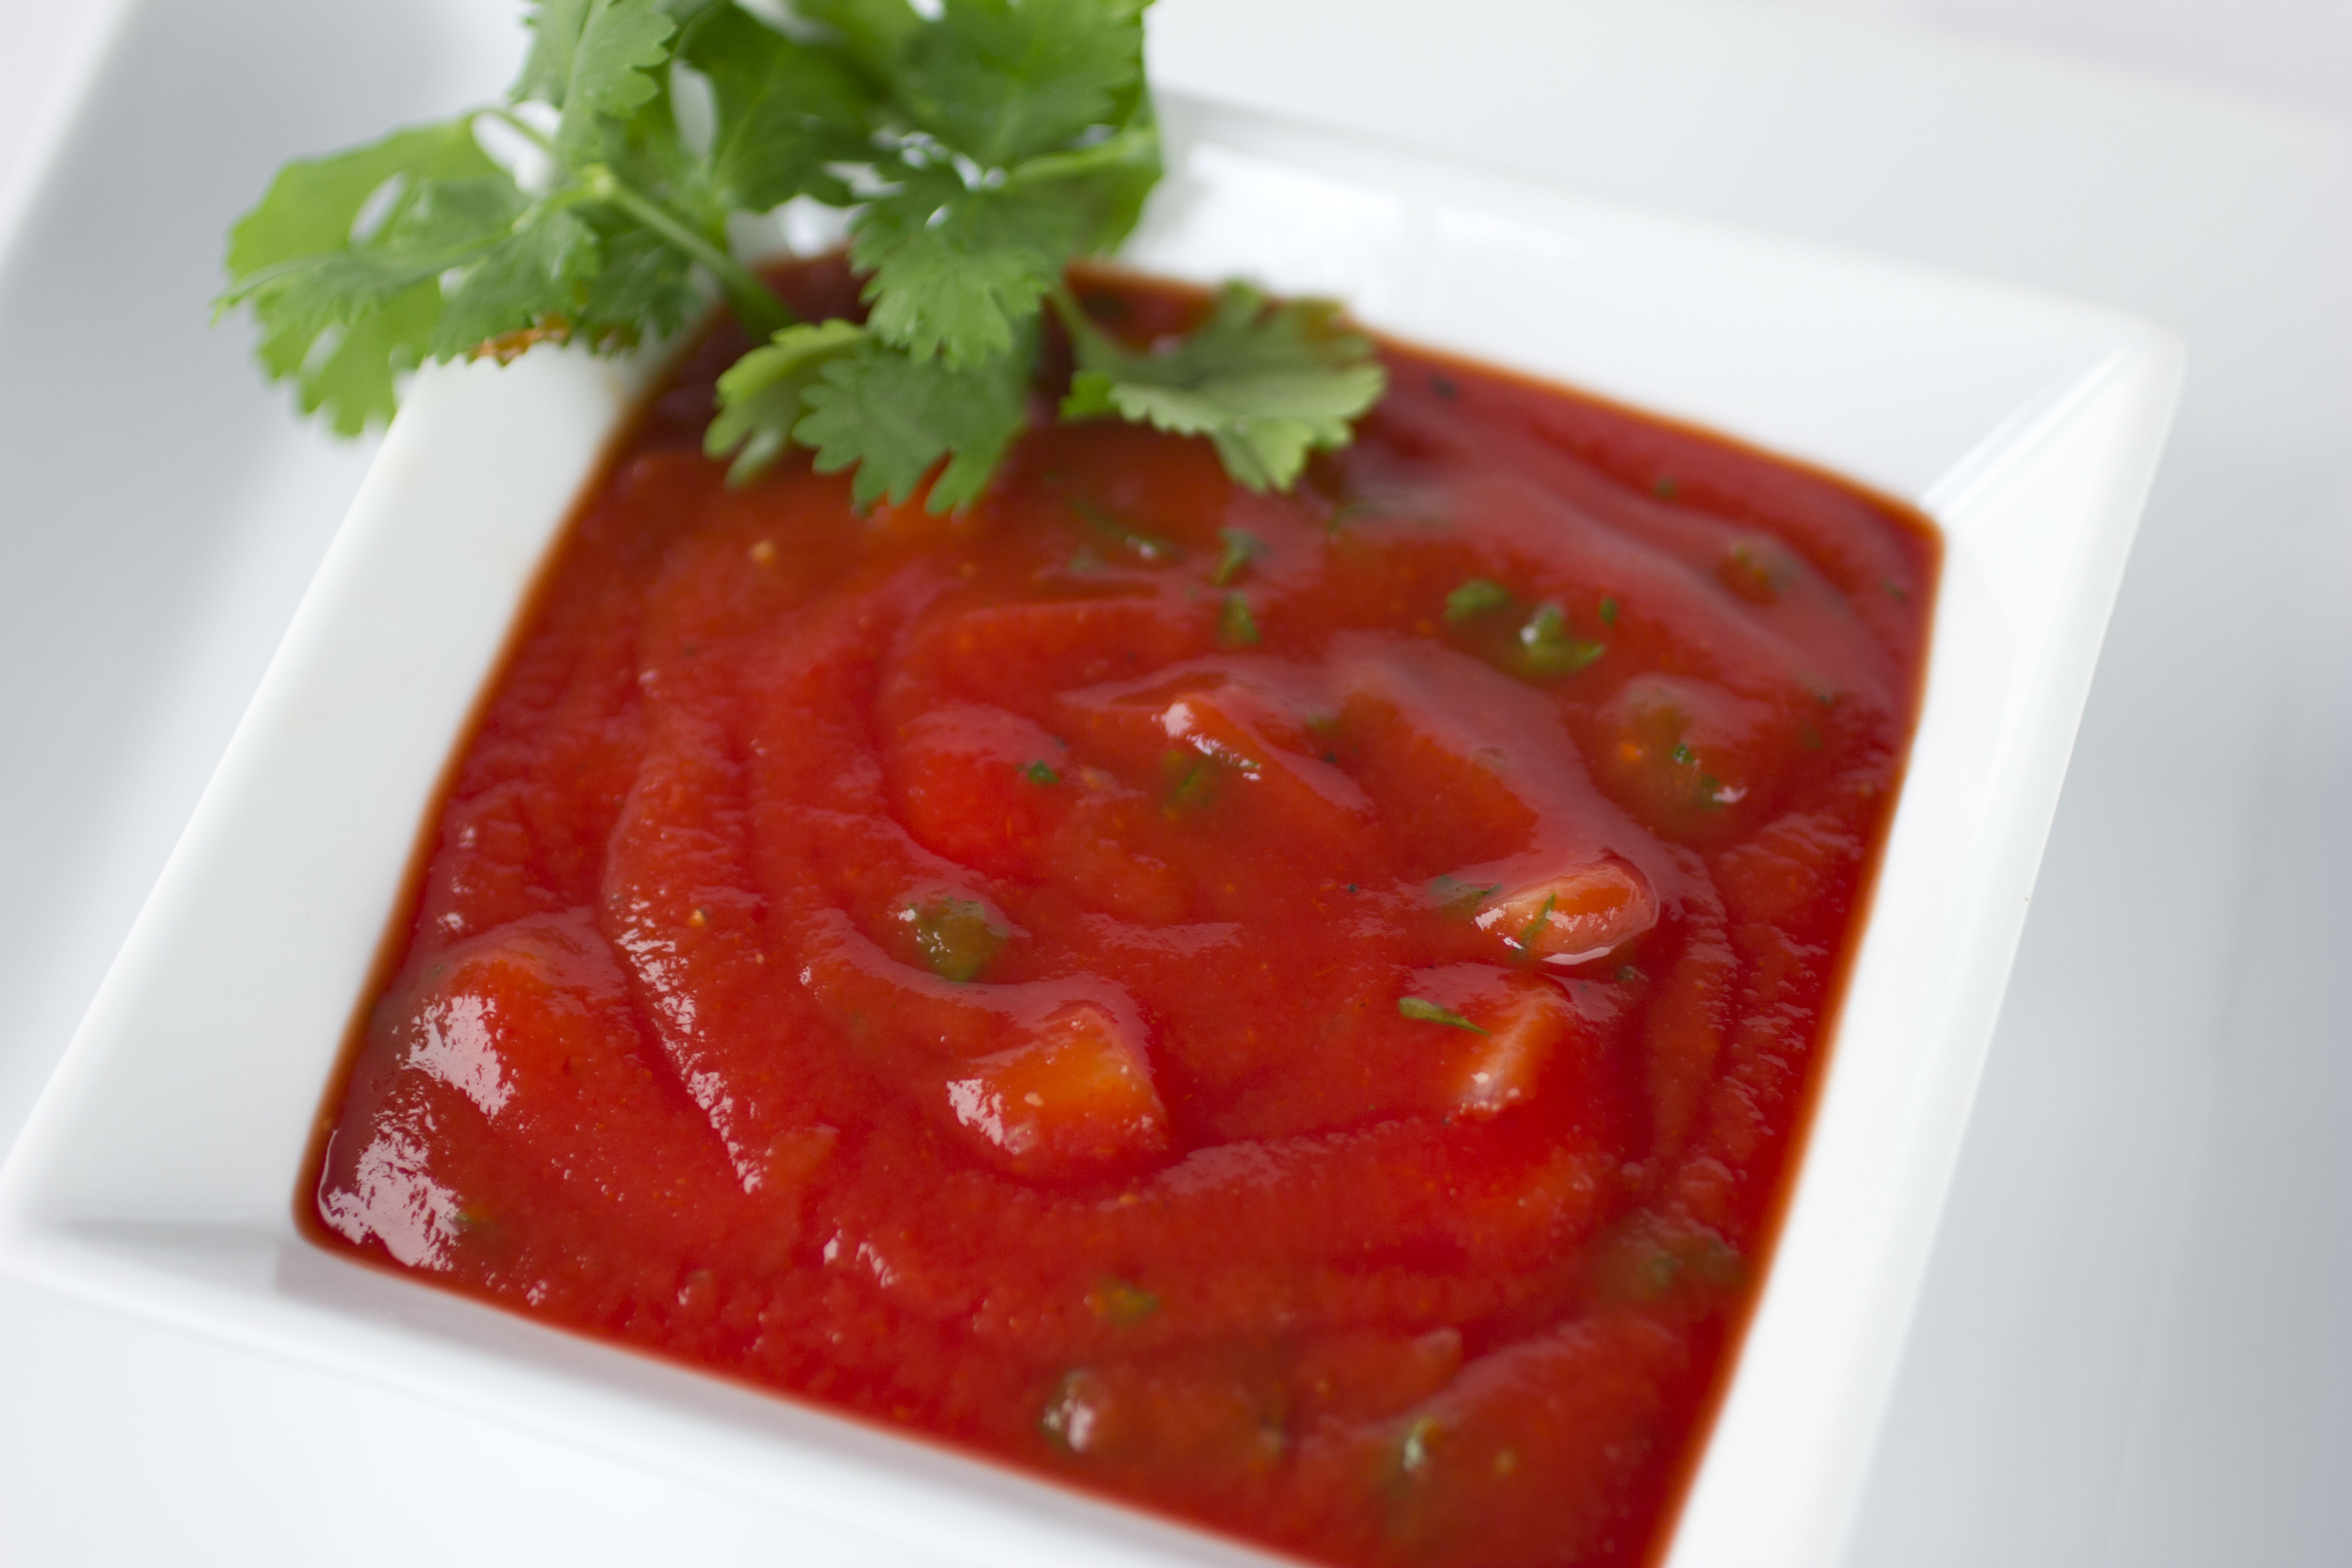 cilantro onion salsa